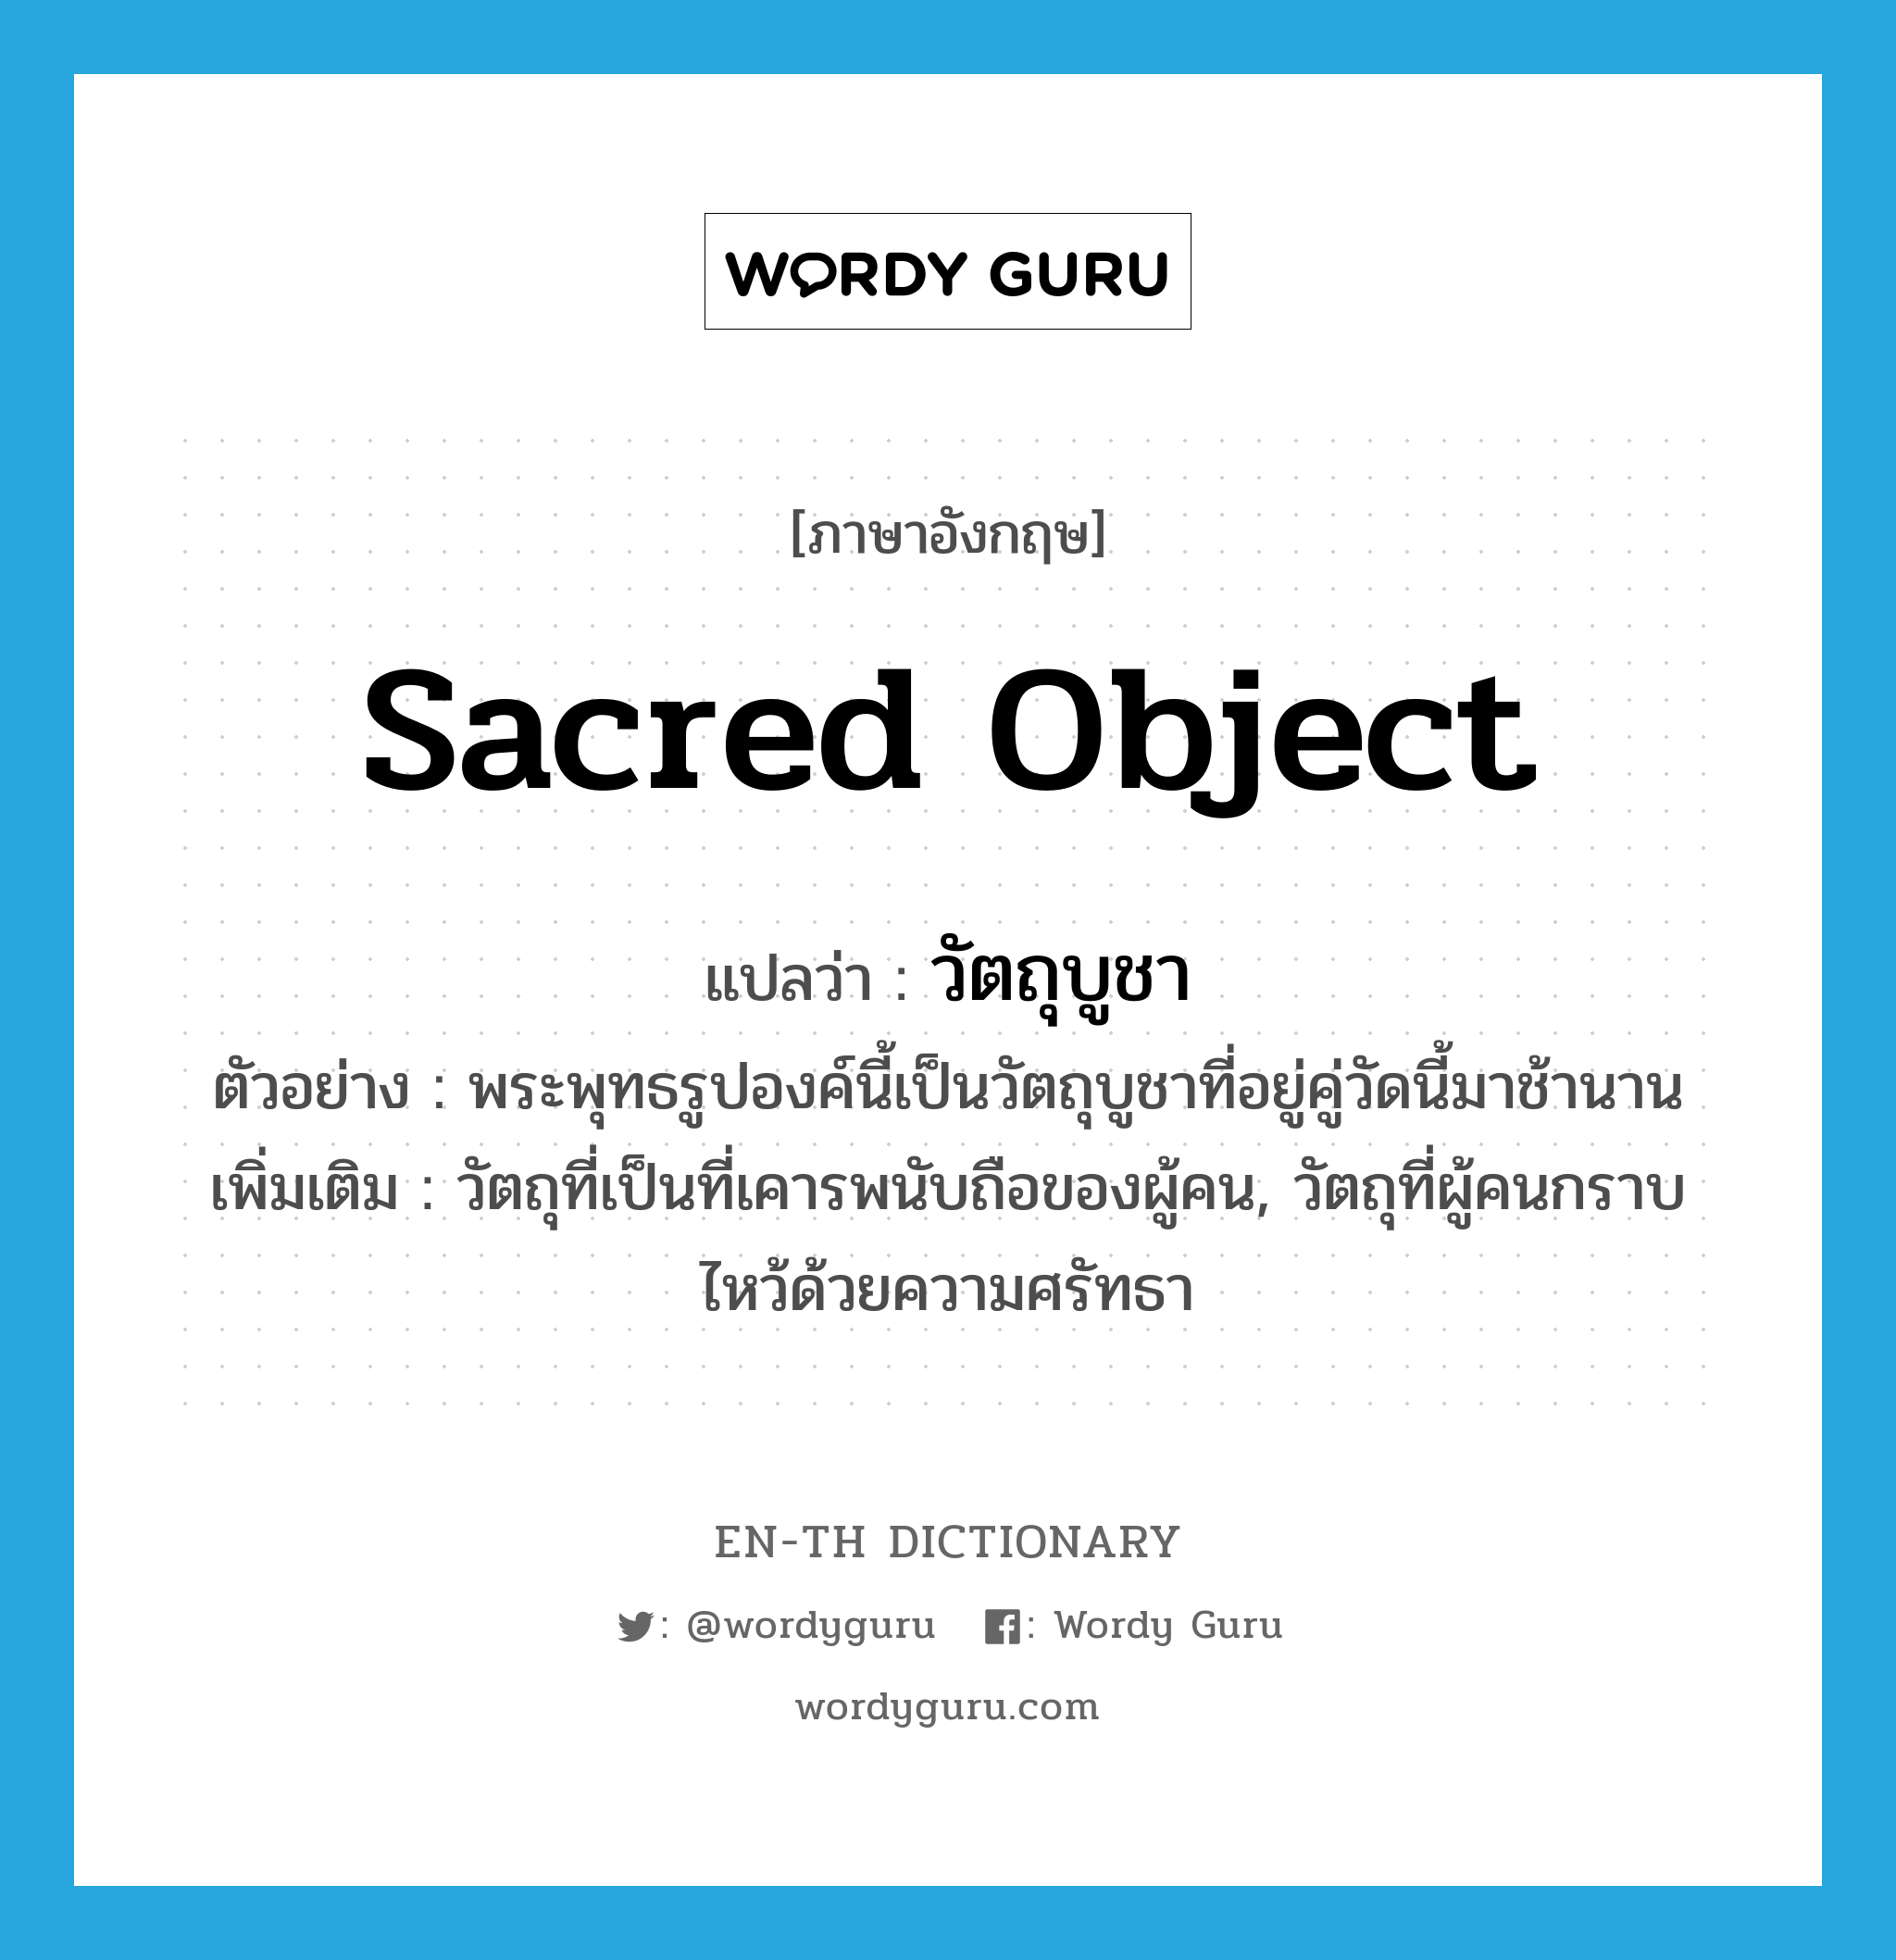 sacred object แปลว่า?, คำศัพท์ภาษาอังกฤษ sacred object แปลว่า วัตถุบูชา ประเภท N ตัวอย่าง พระพุทธรูปองค์นี้เป็นวัตถุบูชาที่อยู่คู่วัดนี้มาช้านาน เพิ่มเติม วัตถุที่เป็นที่เคารพนับถือของผู้คน, วัตถุที่ผู้คนกราบไหว้ด้วยความศรัทธา หมวด N